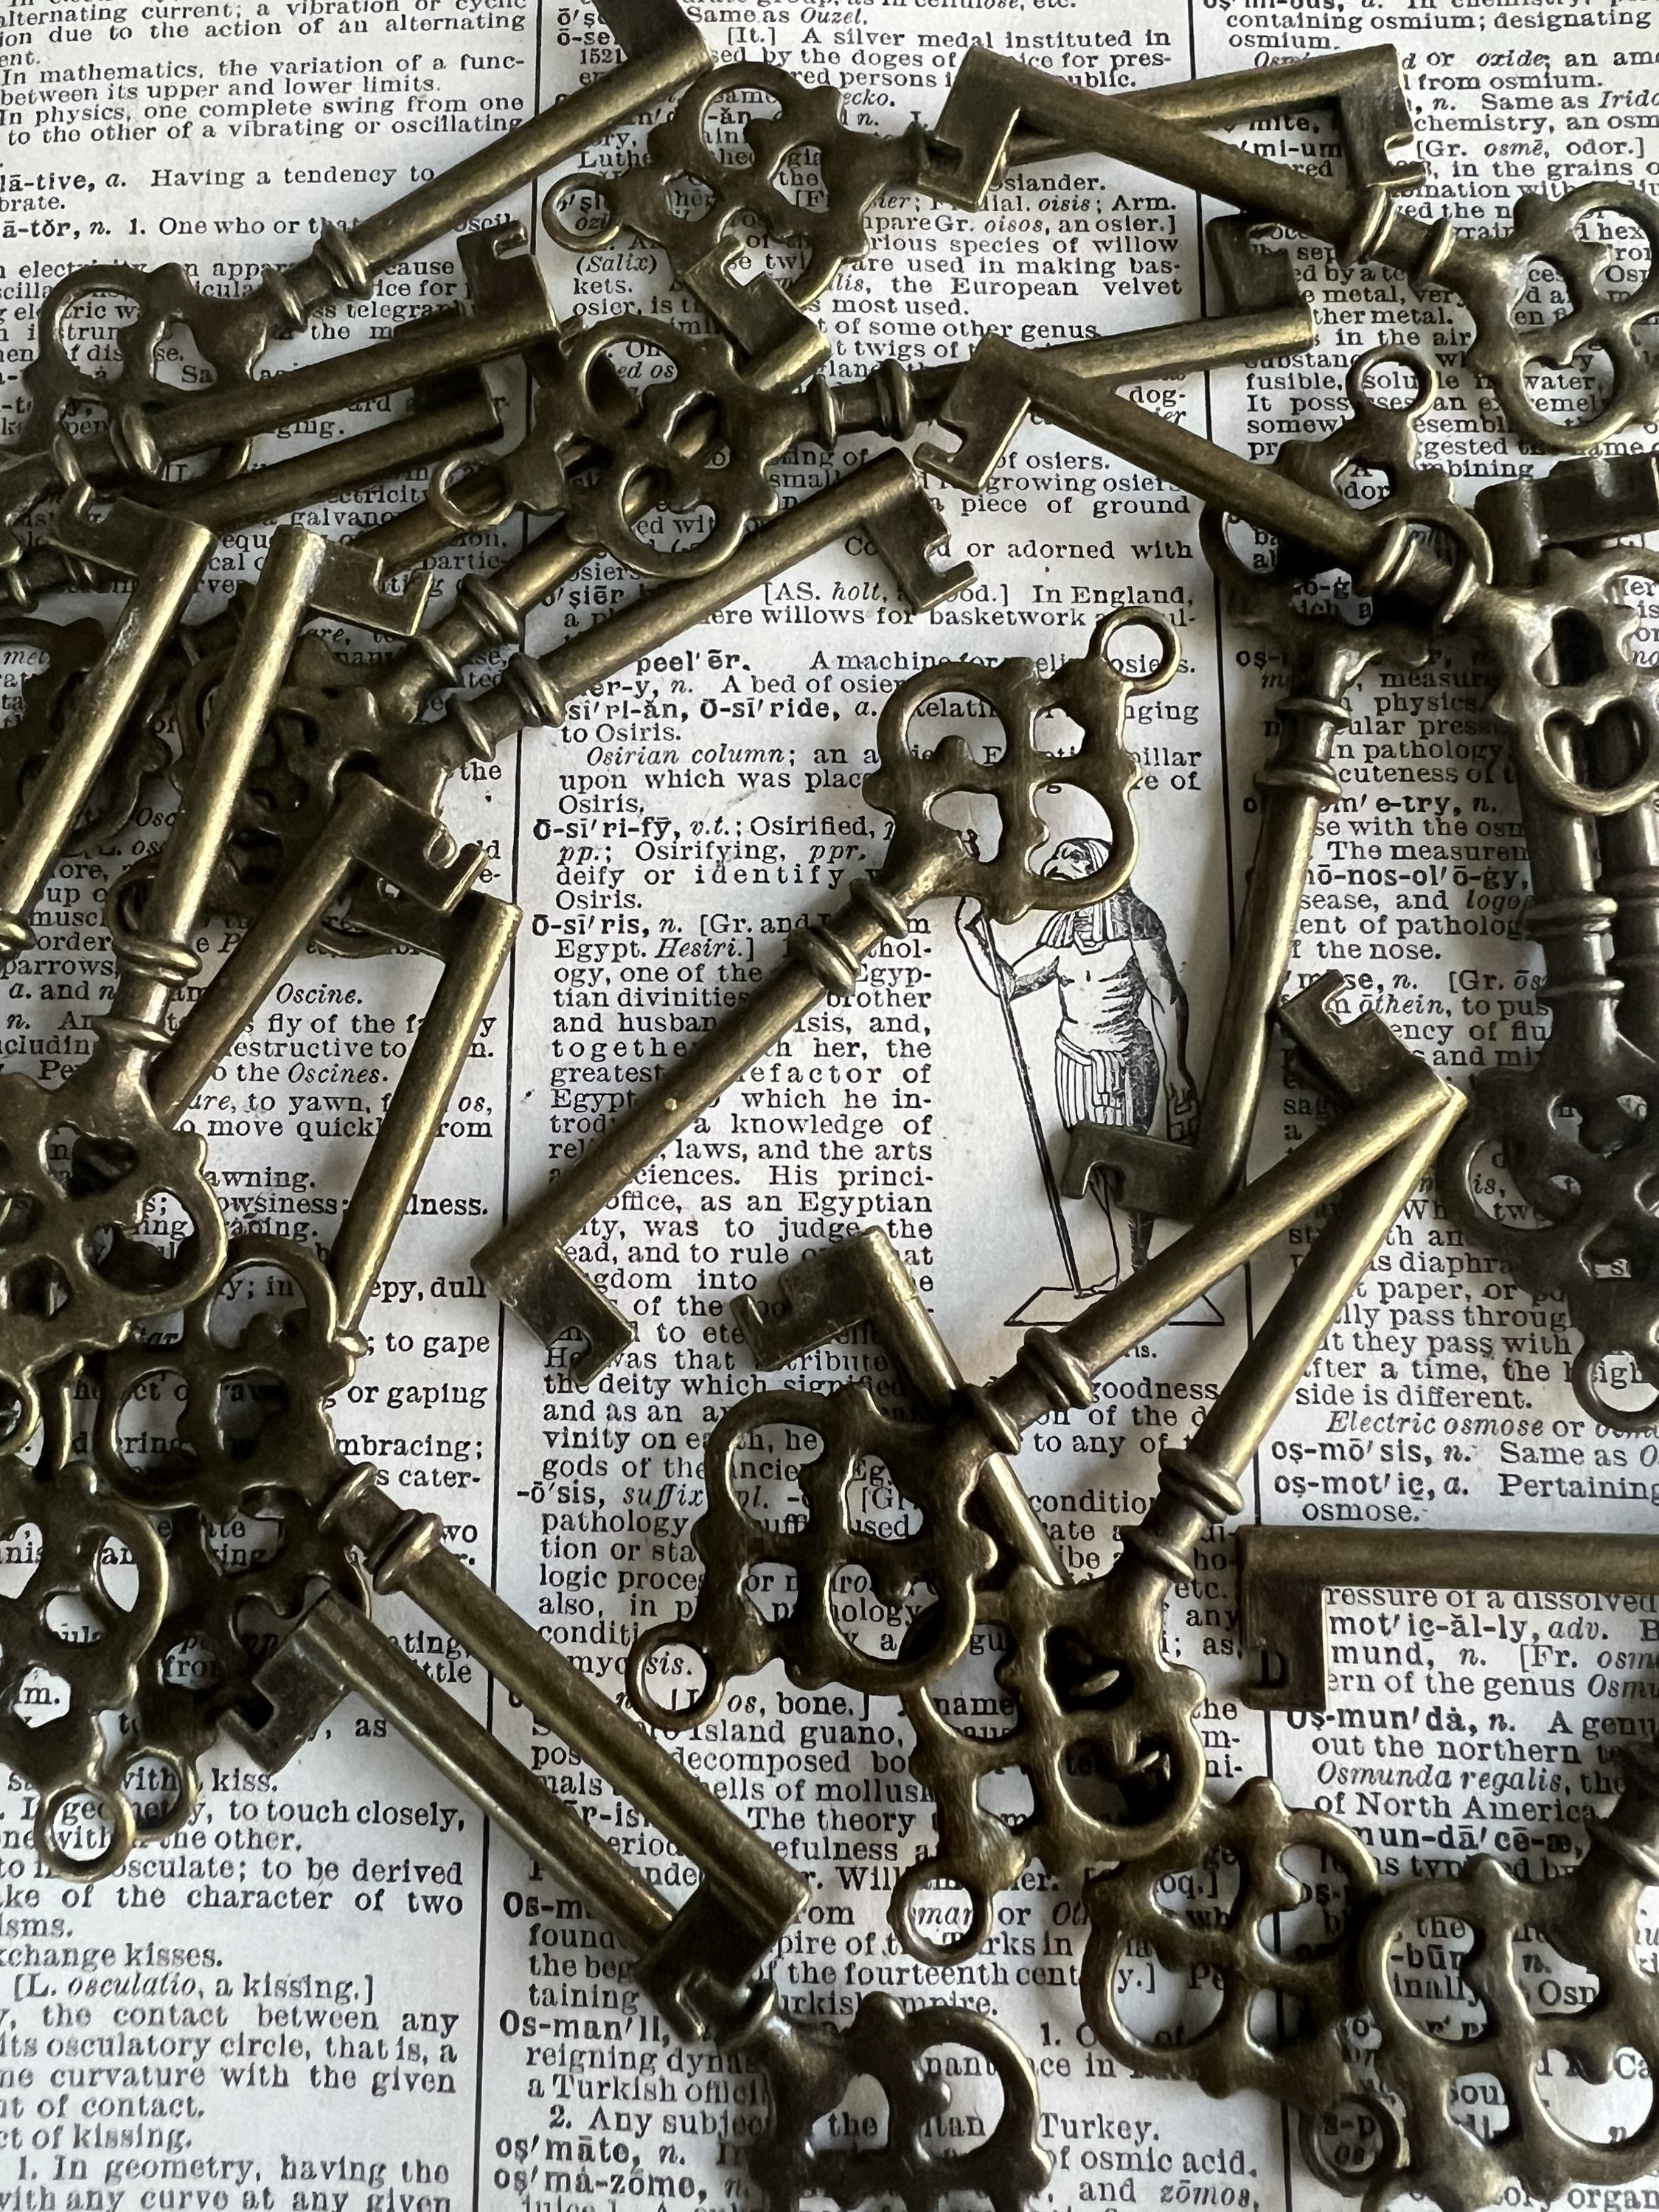 Antique Skeleton Keys - lot of 5 - Solid & Hollow Vintage Keys -  Fancy/Ornate